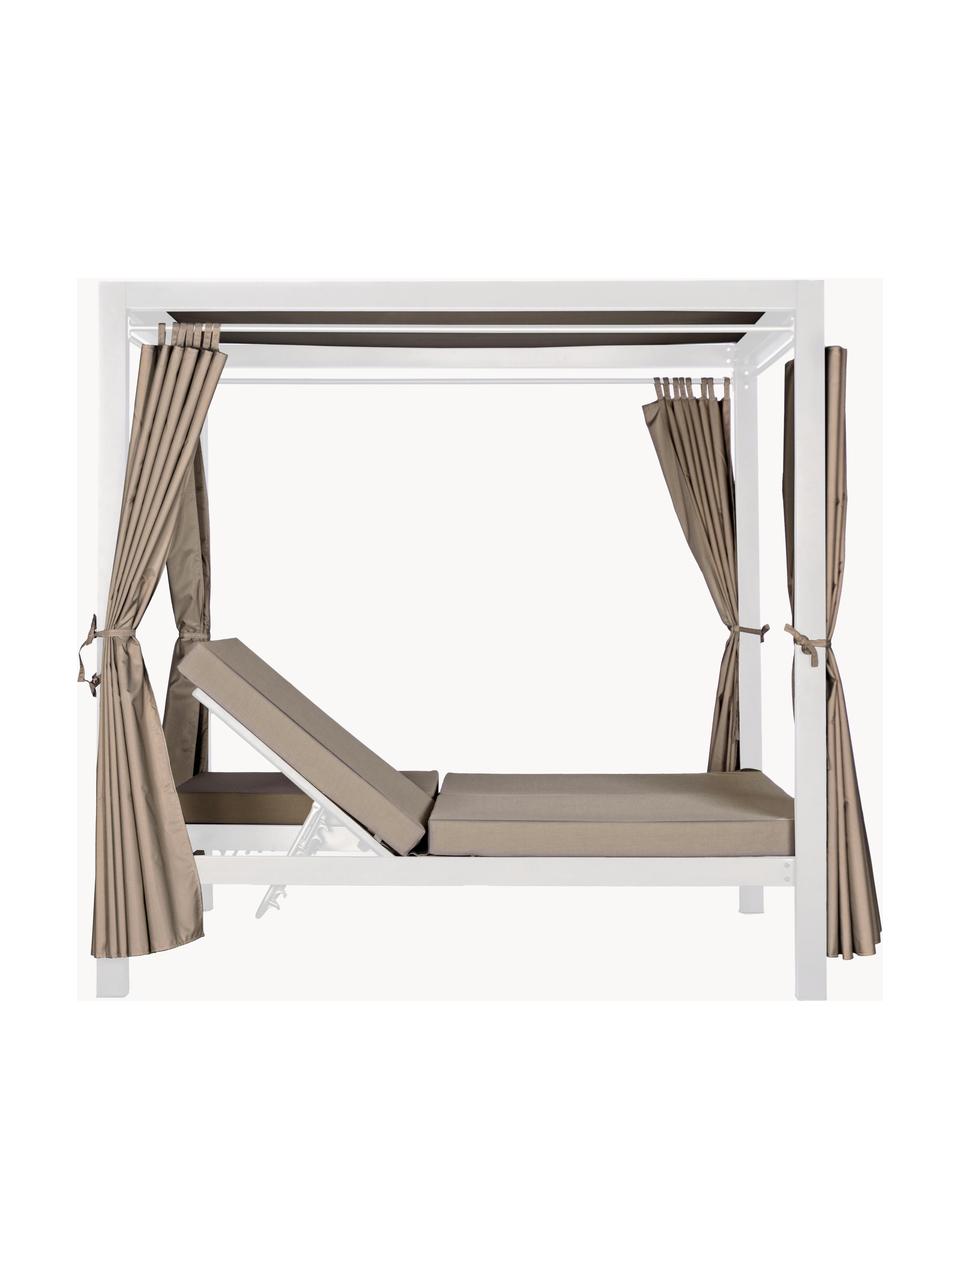 Chaise longue de jardin double avec toit solaire Dream, Tissu beige, blanc, larg. 188 x haut. 205 cm